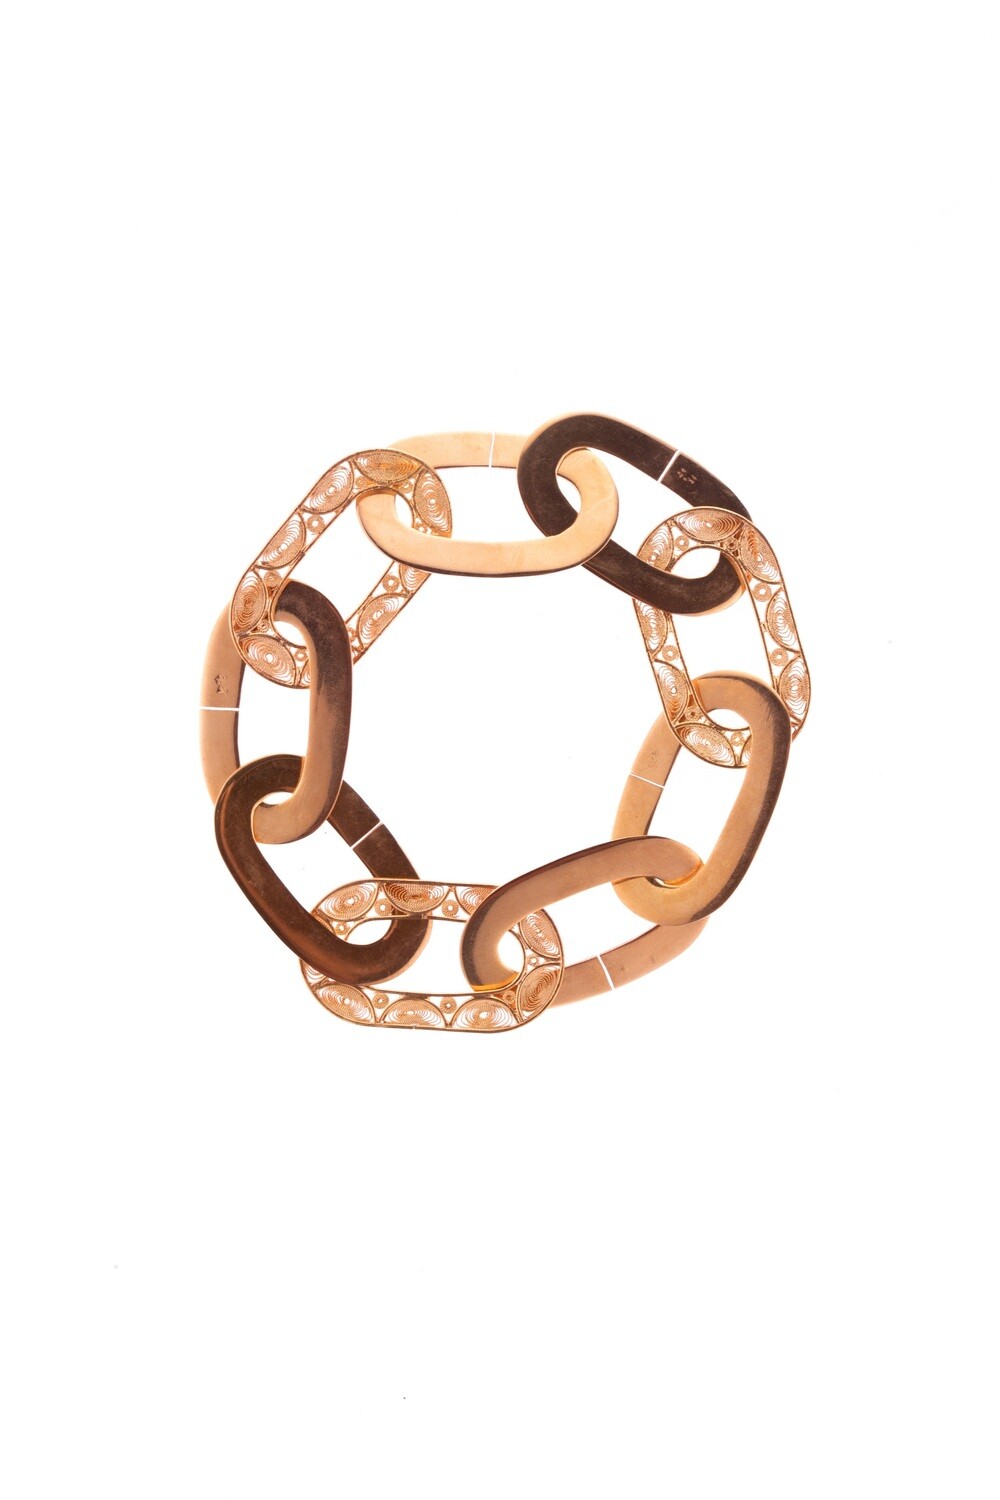 catenaria bracelet in rose gold